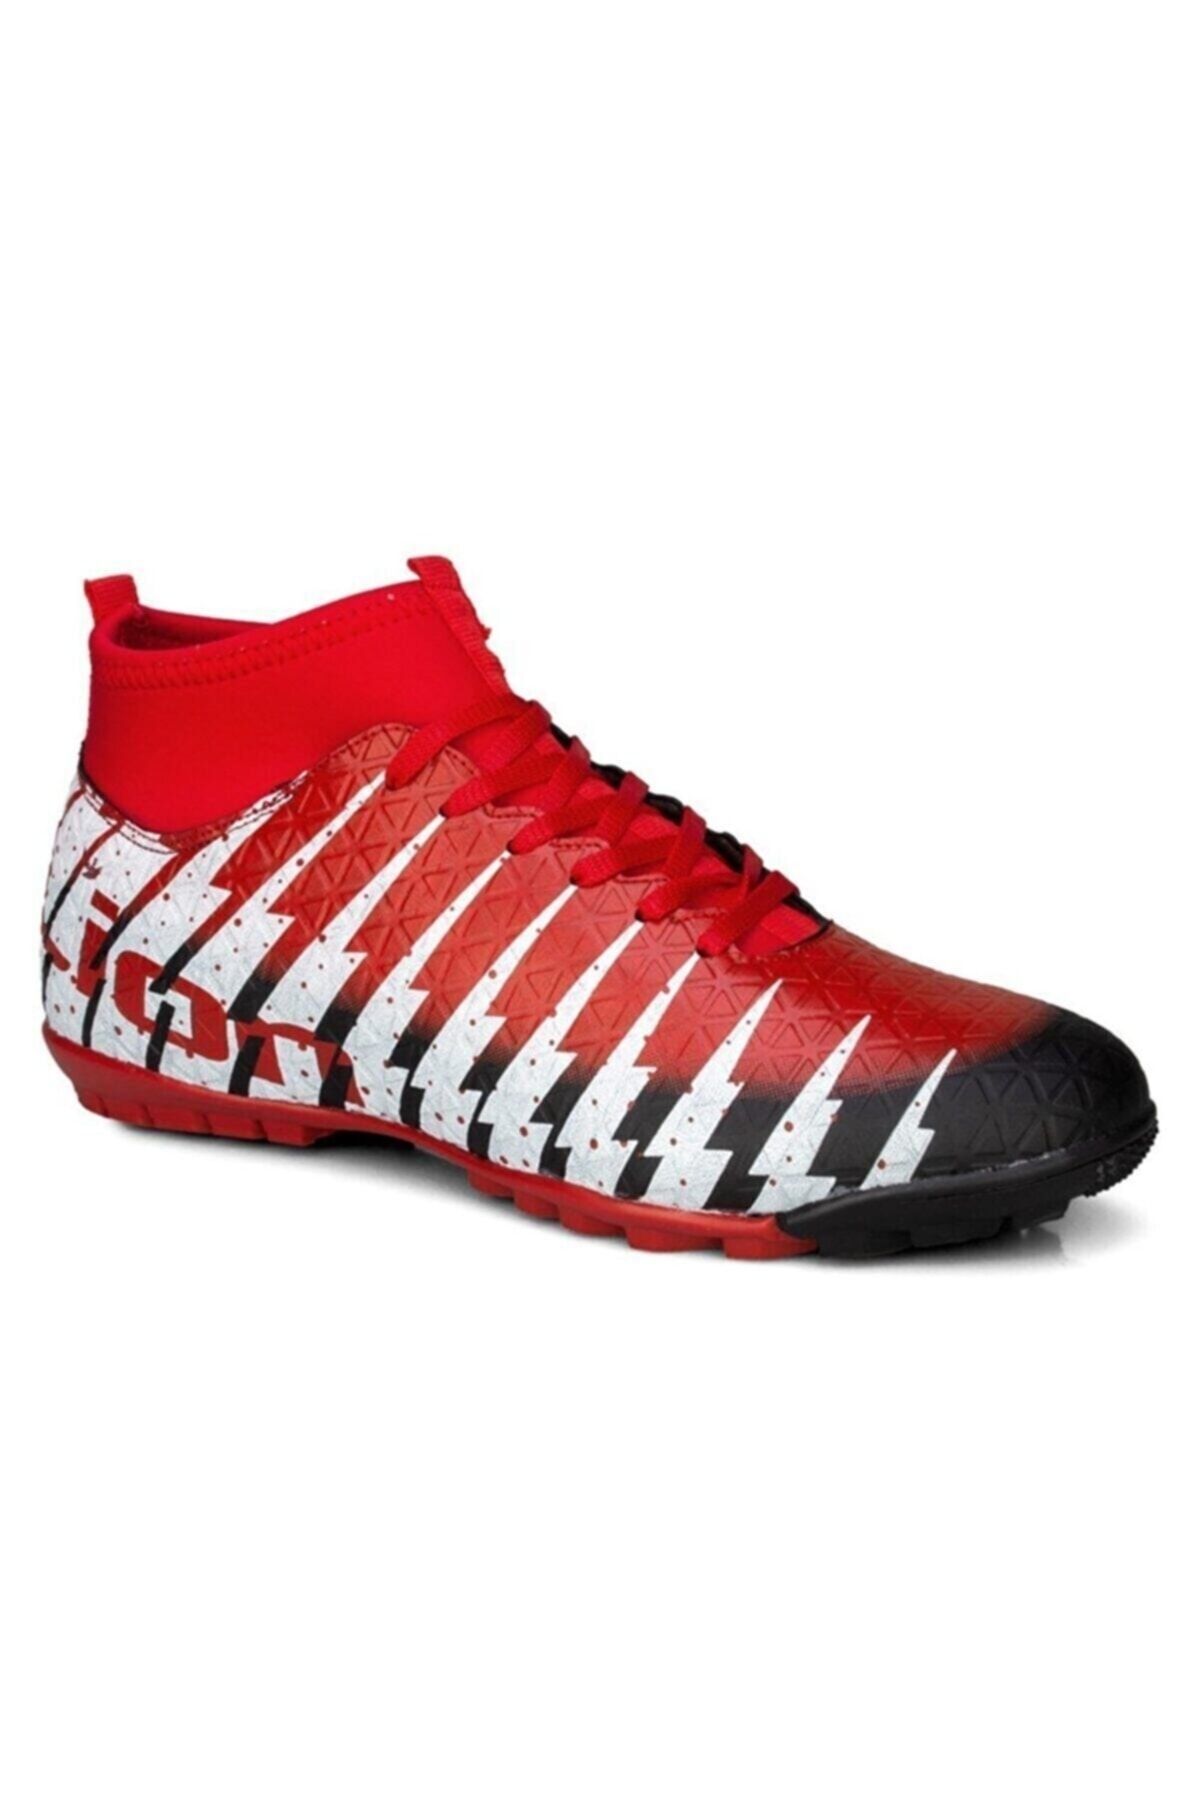 Lion Çocuk Siyah Kırmızı Çoraplı Halısaha Futbol Ayakkabısı